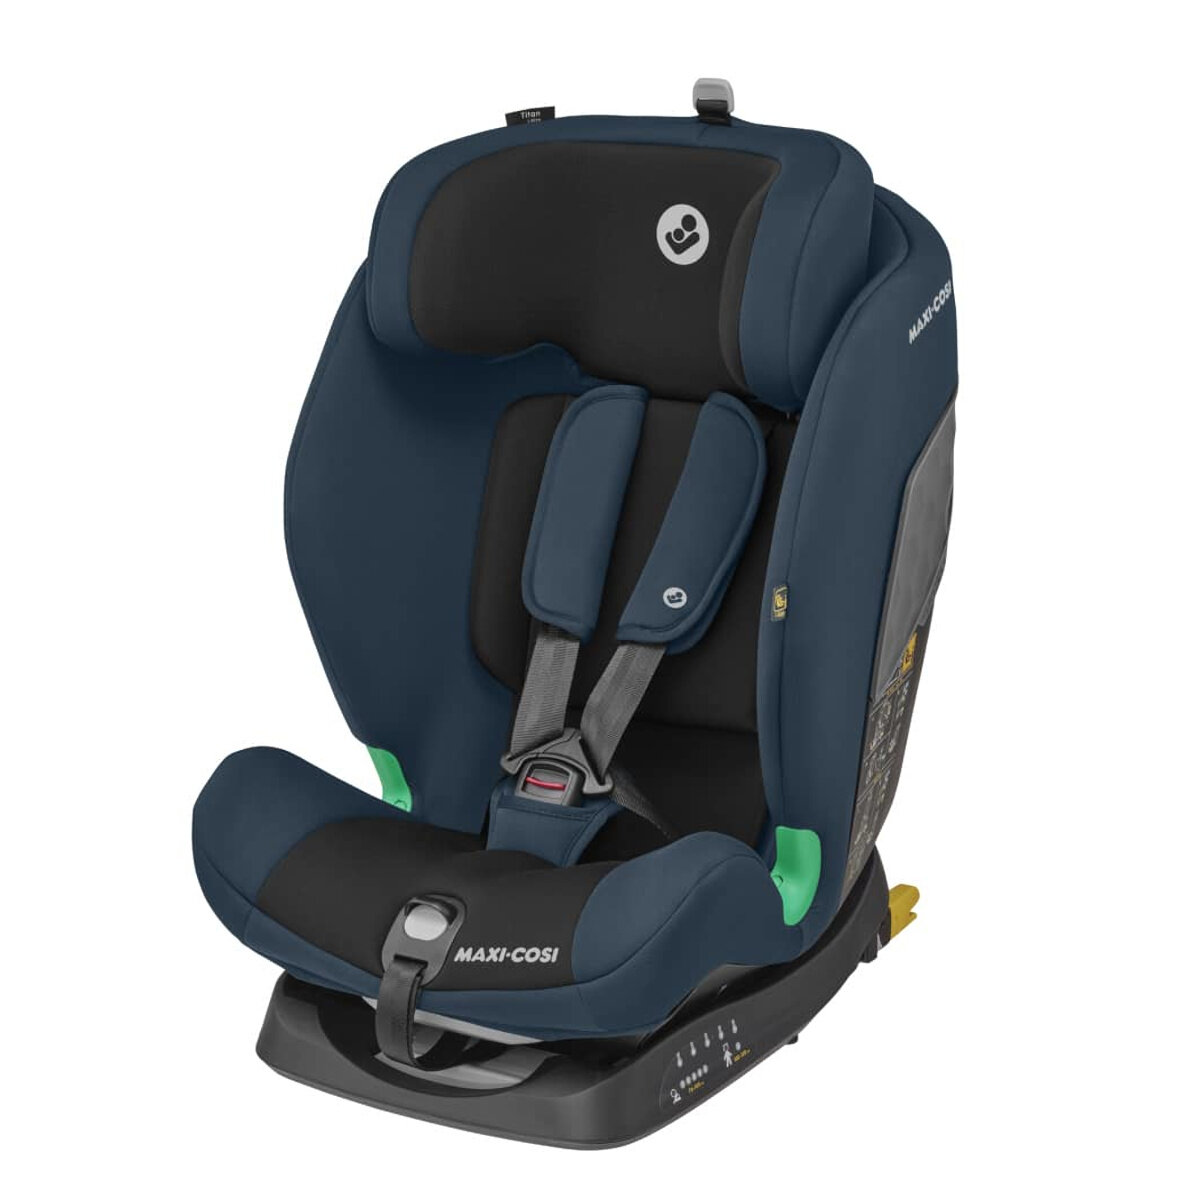 Maxi-Cosi Kindersitz Titan i-Size - babyprofi.de, 299,99 €